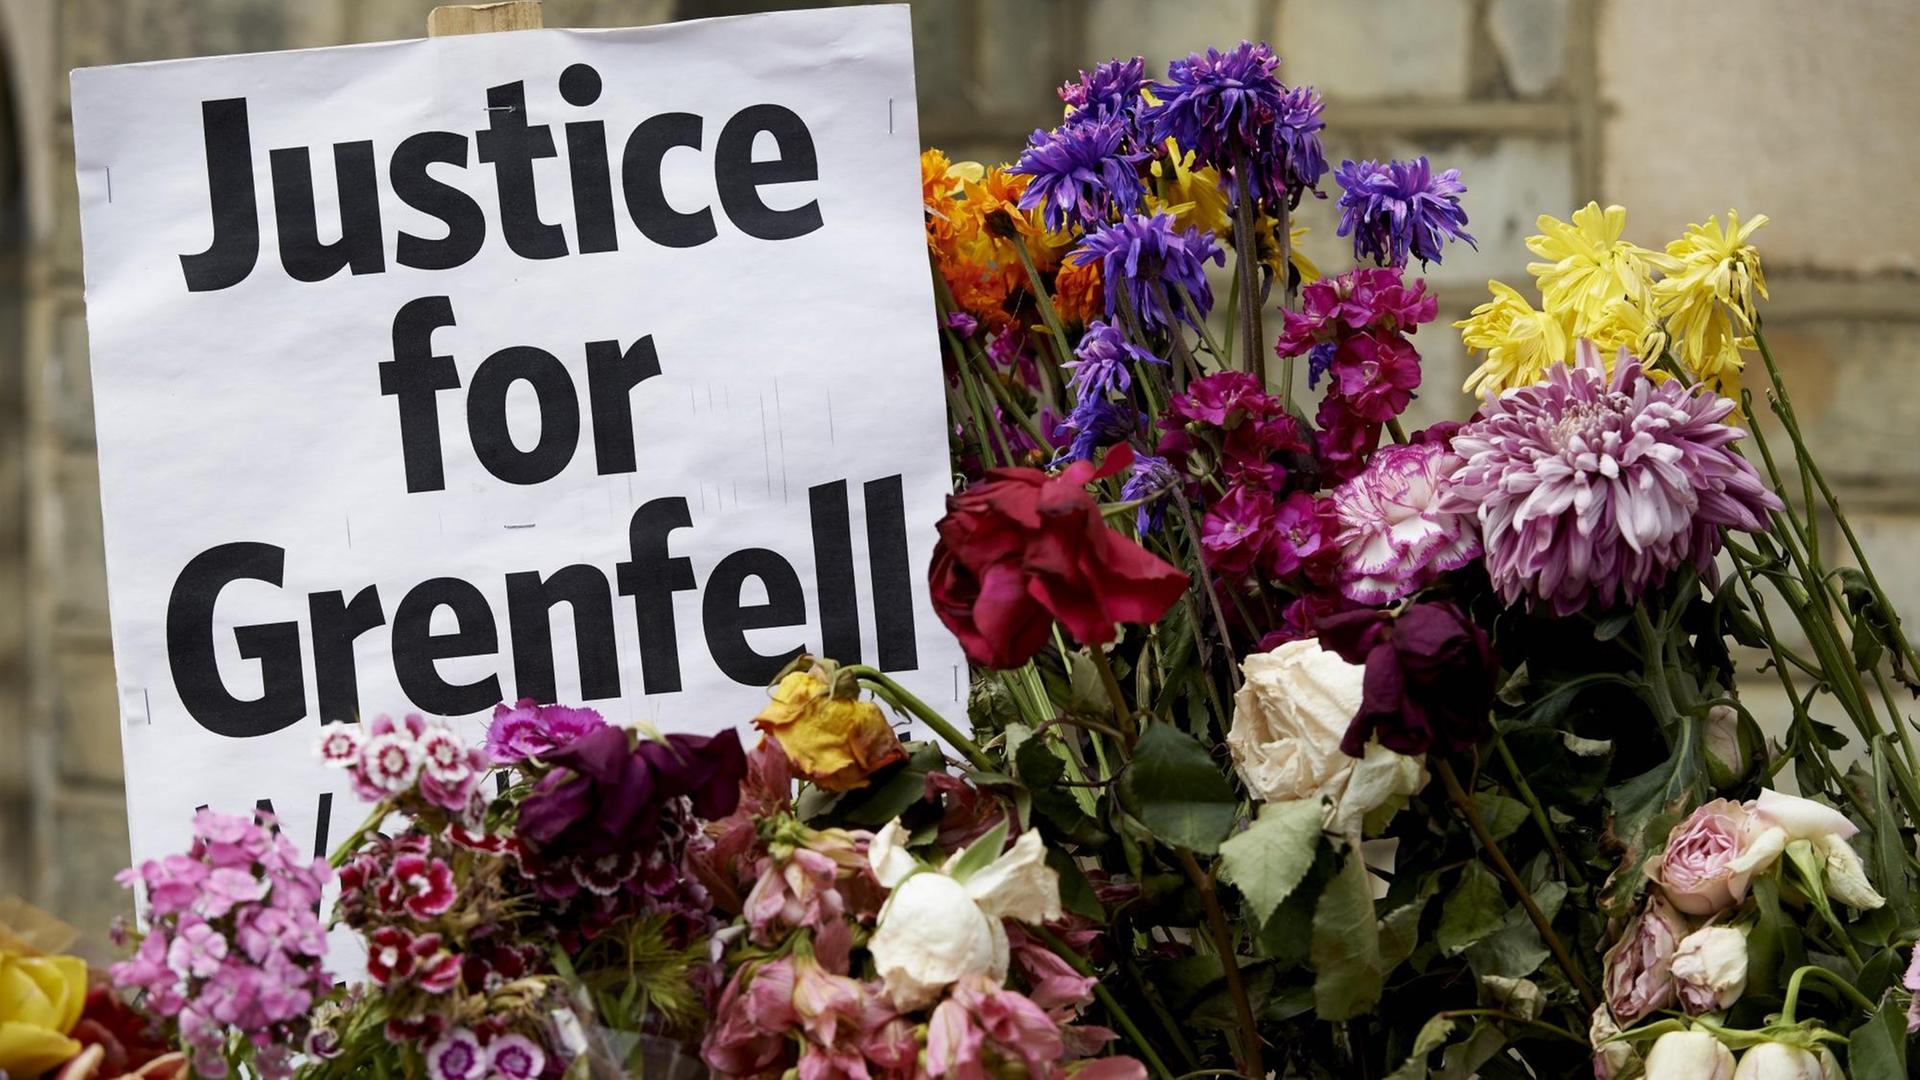 In Erinnerung an die Brandkatastrophe im Grenfell Tower in Londen stehen Blumen neben einem Zettel mit der Aufschrift "Justice for Grenfell"